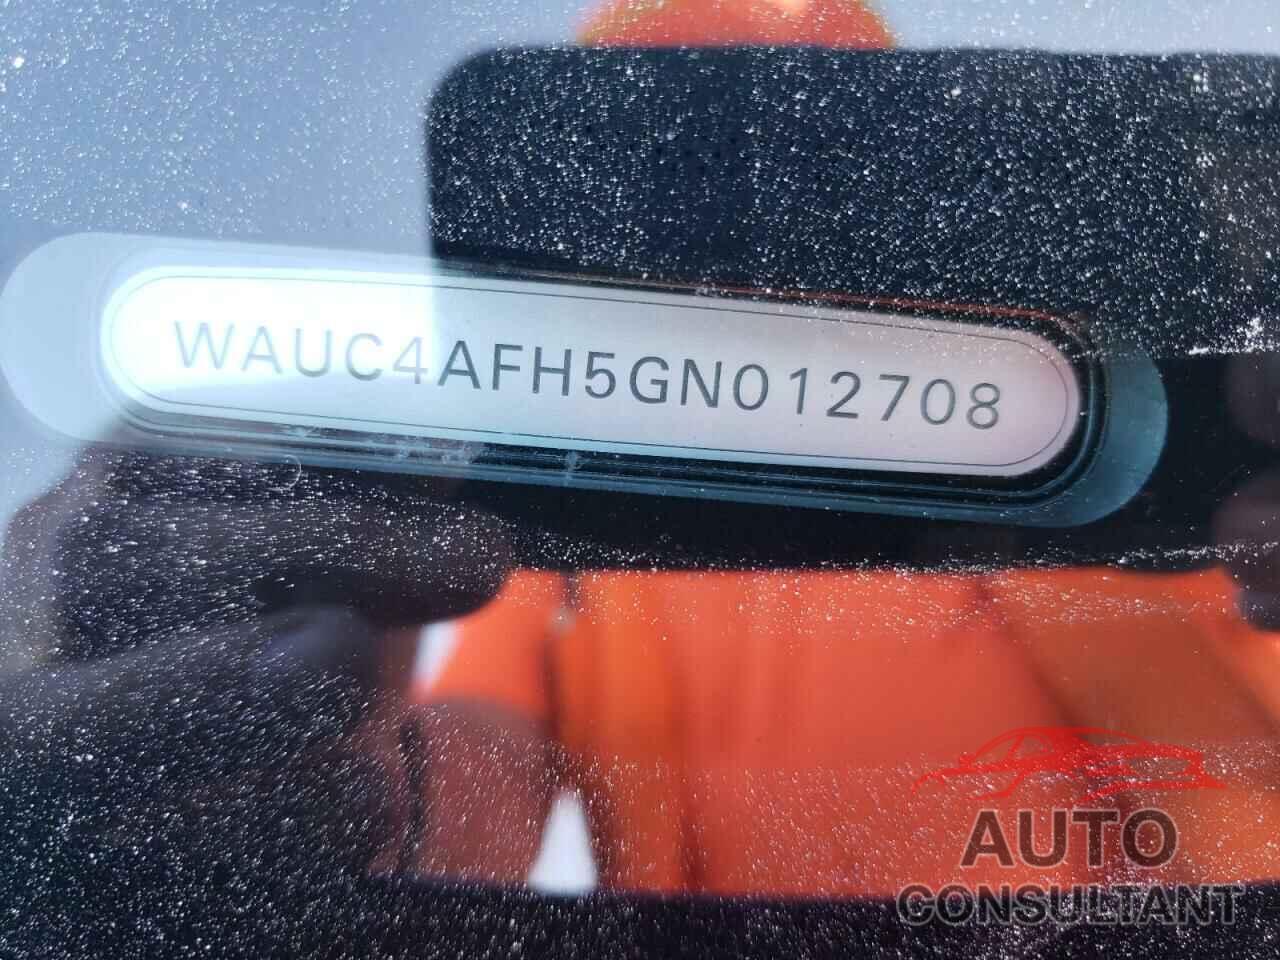 AUDI S5/RS5 2016 - WAUC4AFH5GN012708